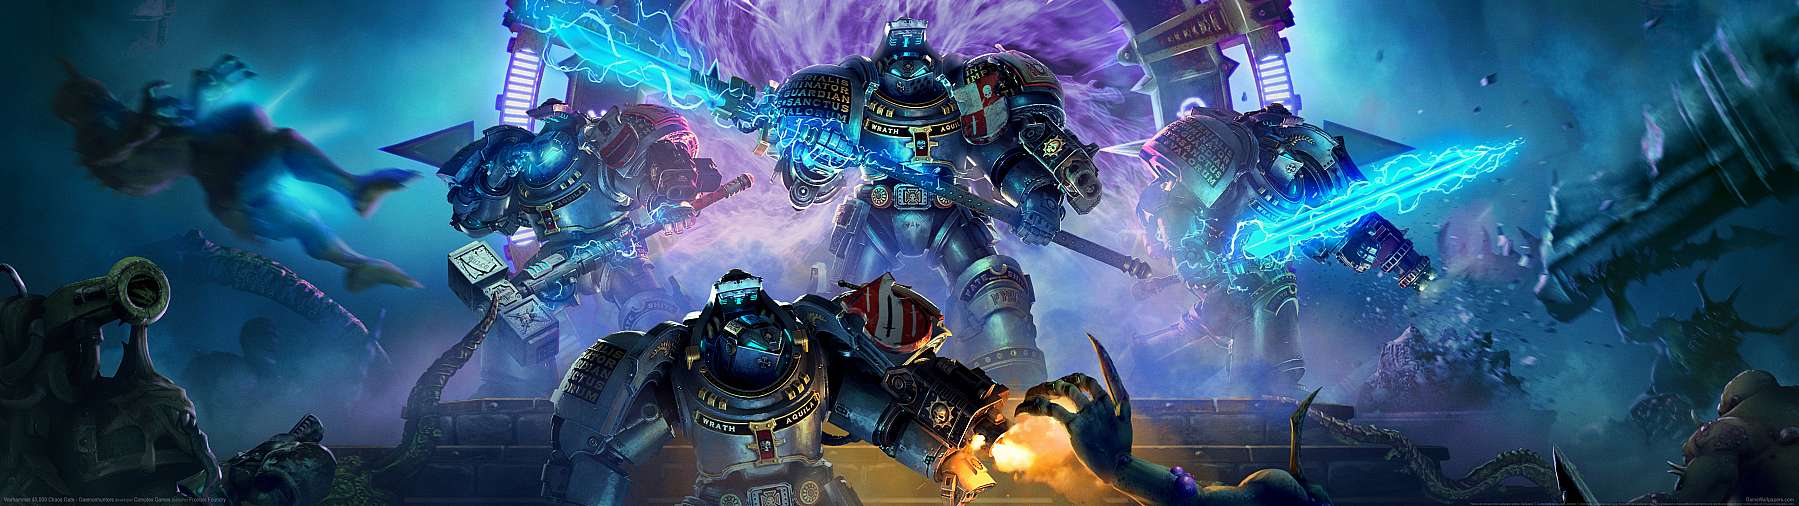 Warhammer 40,000: Chaos Gate - Daemonhunters superwide achtergrond 01